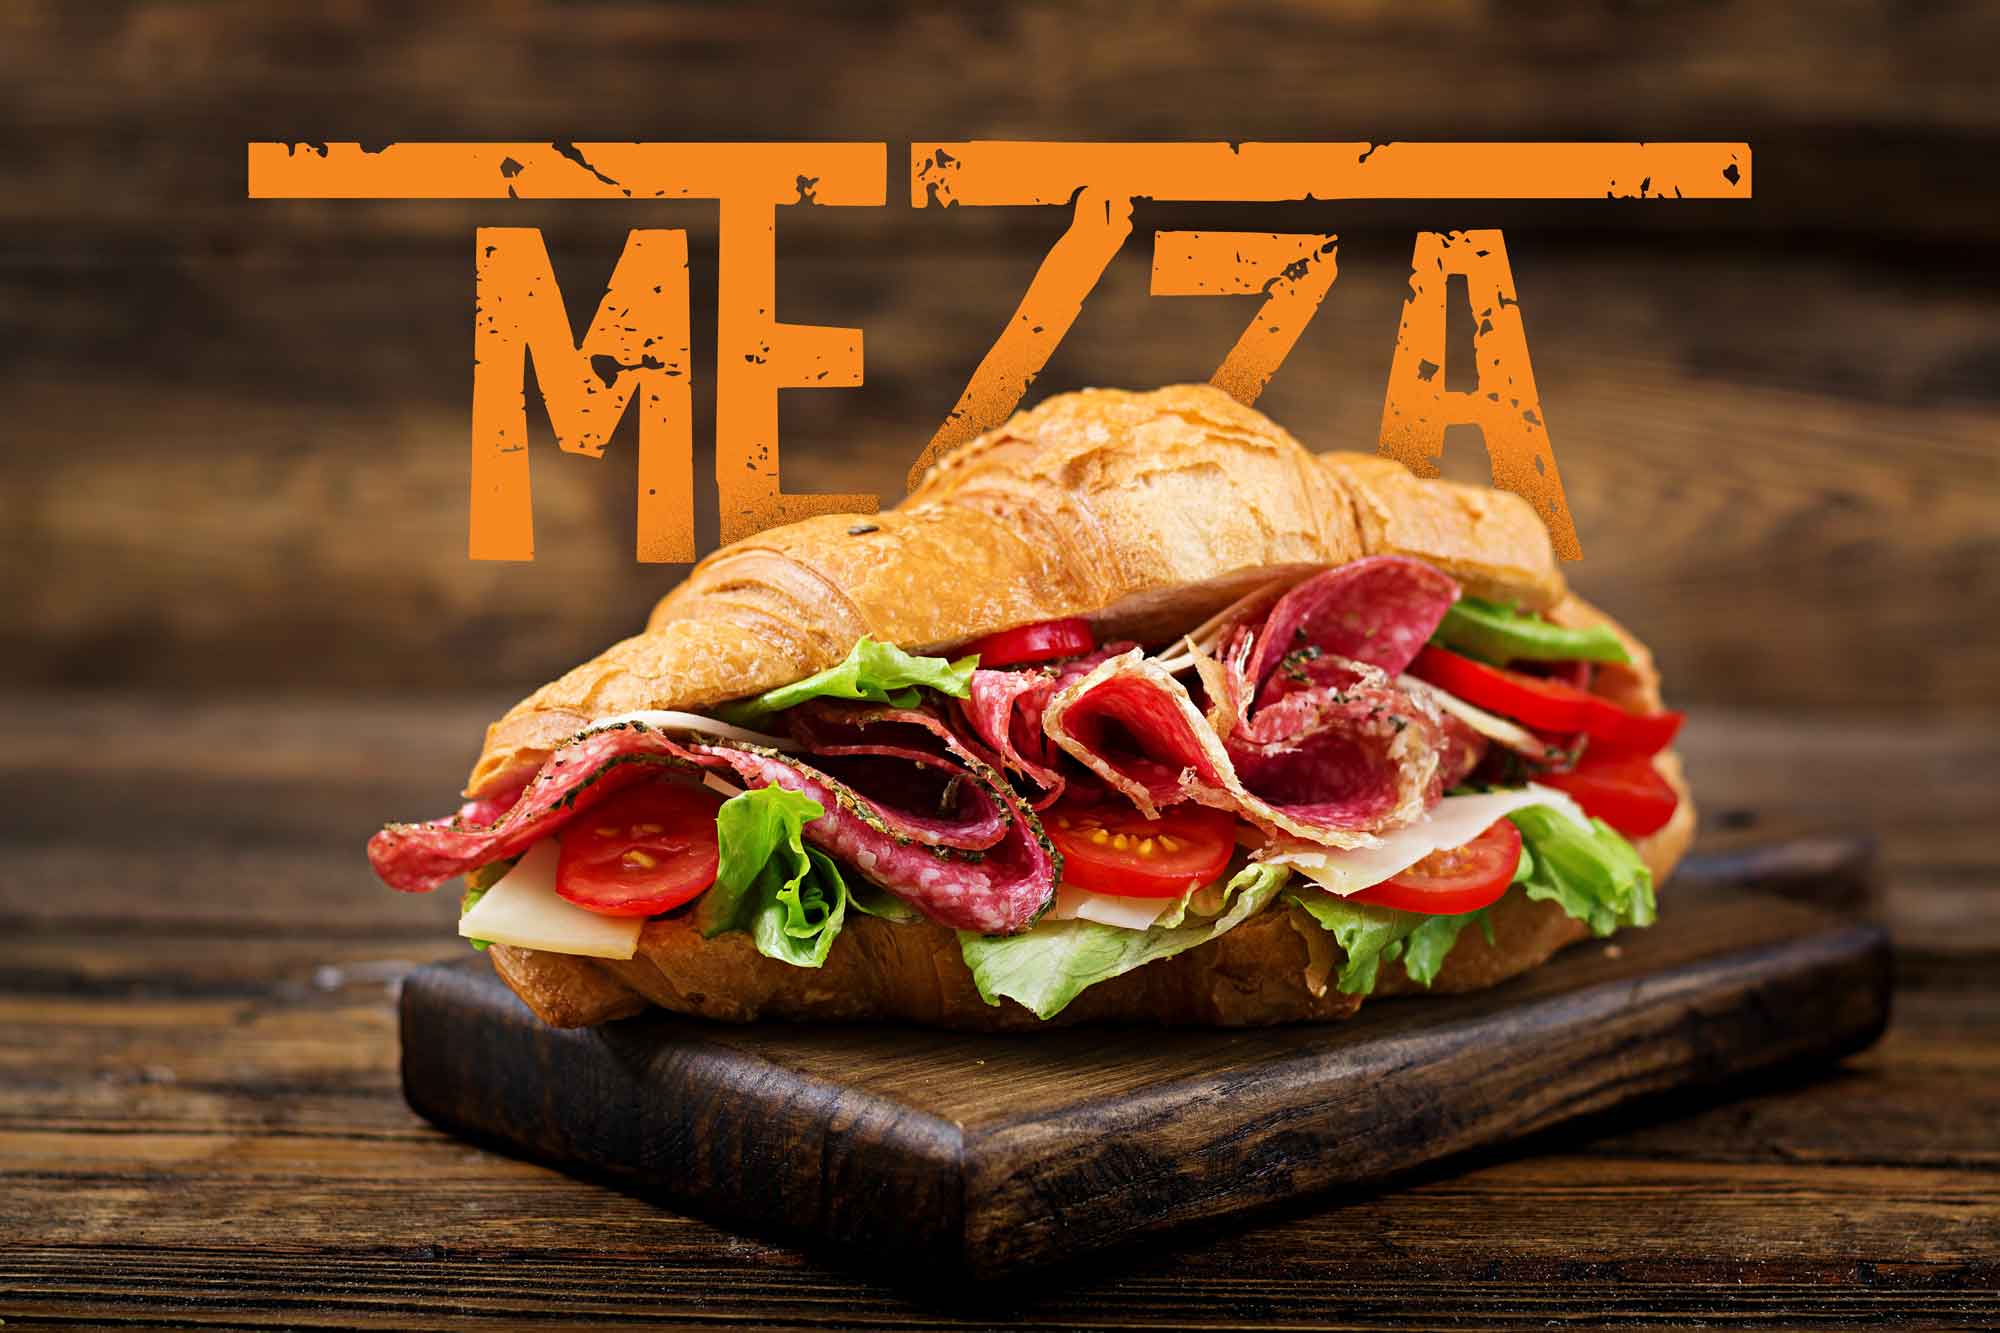 mezza logo design 9 sandwich over the mezza logo